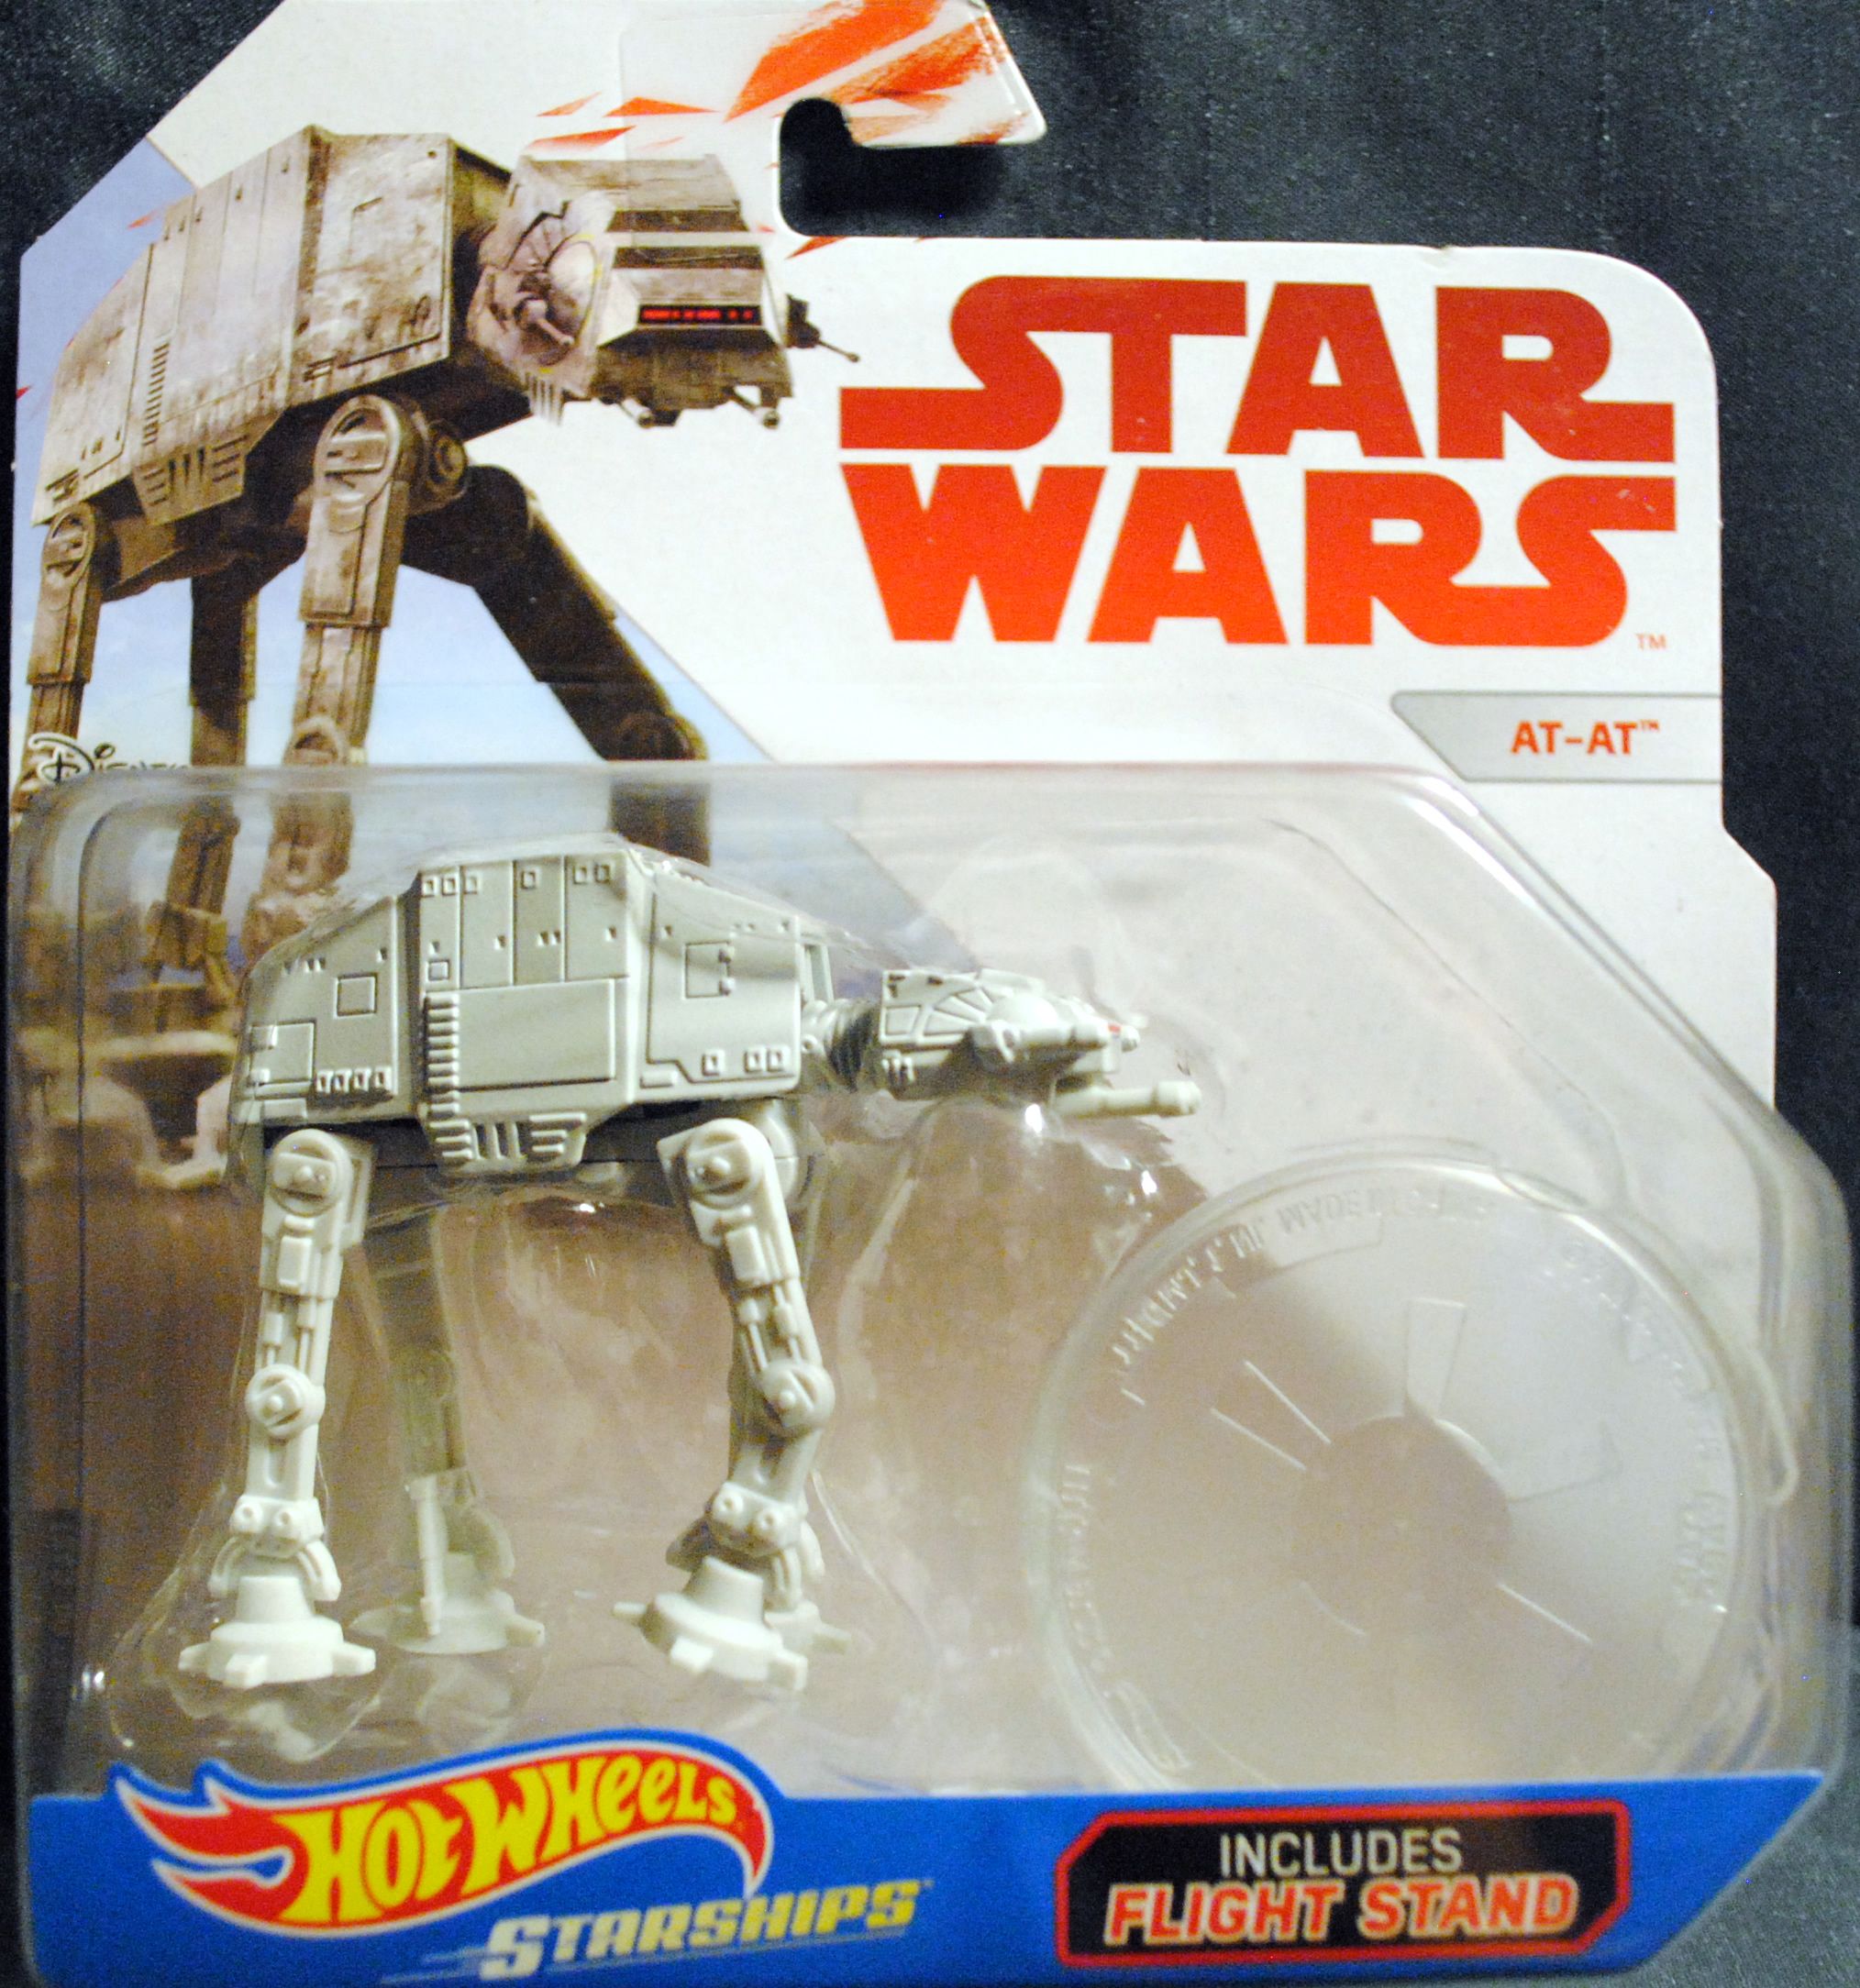 AT-AT - Hot Wheels by Mattel (Star Wars Hot Wheels) action figure collectible [Barcode 0887961611250] - Main Image 1